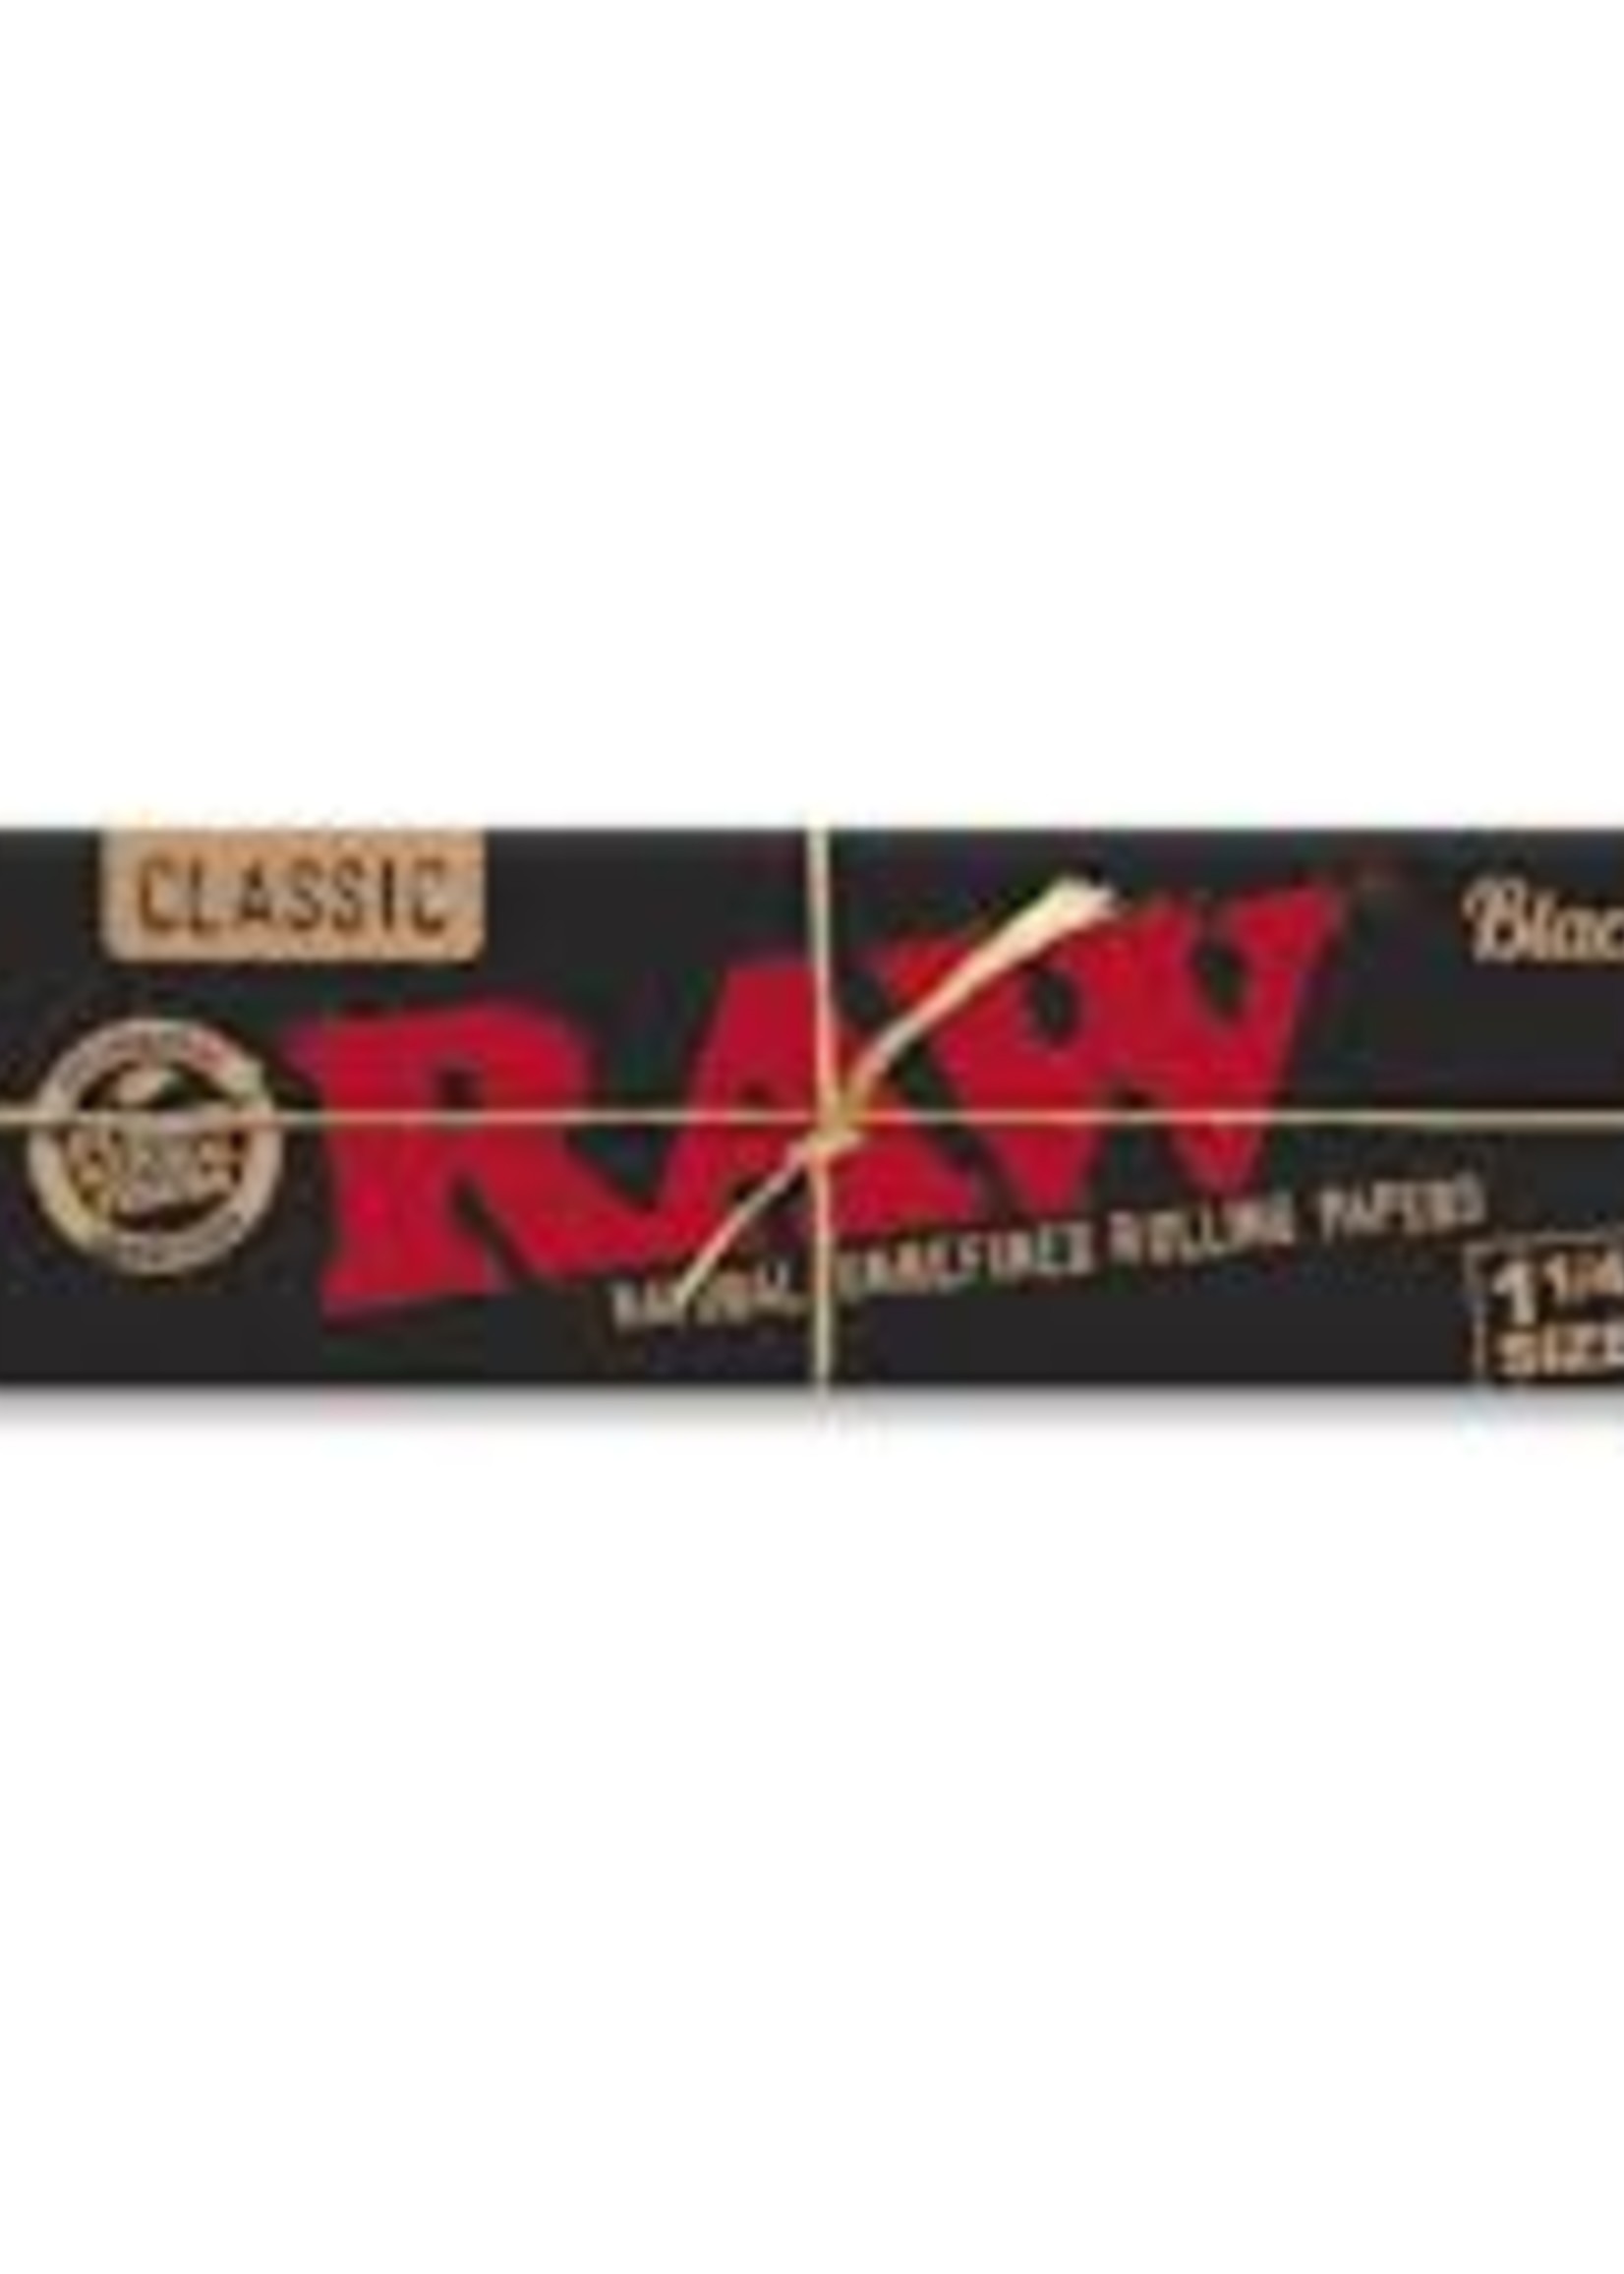 Raw Raw Classic Black 1 1/4 Cones - 20pk